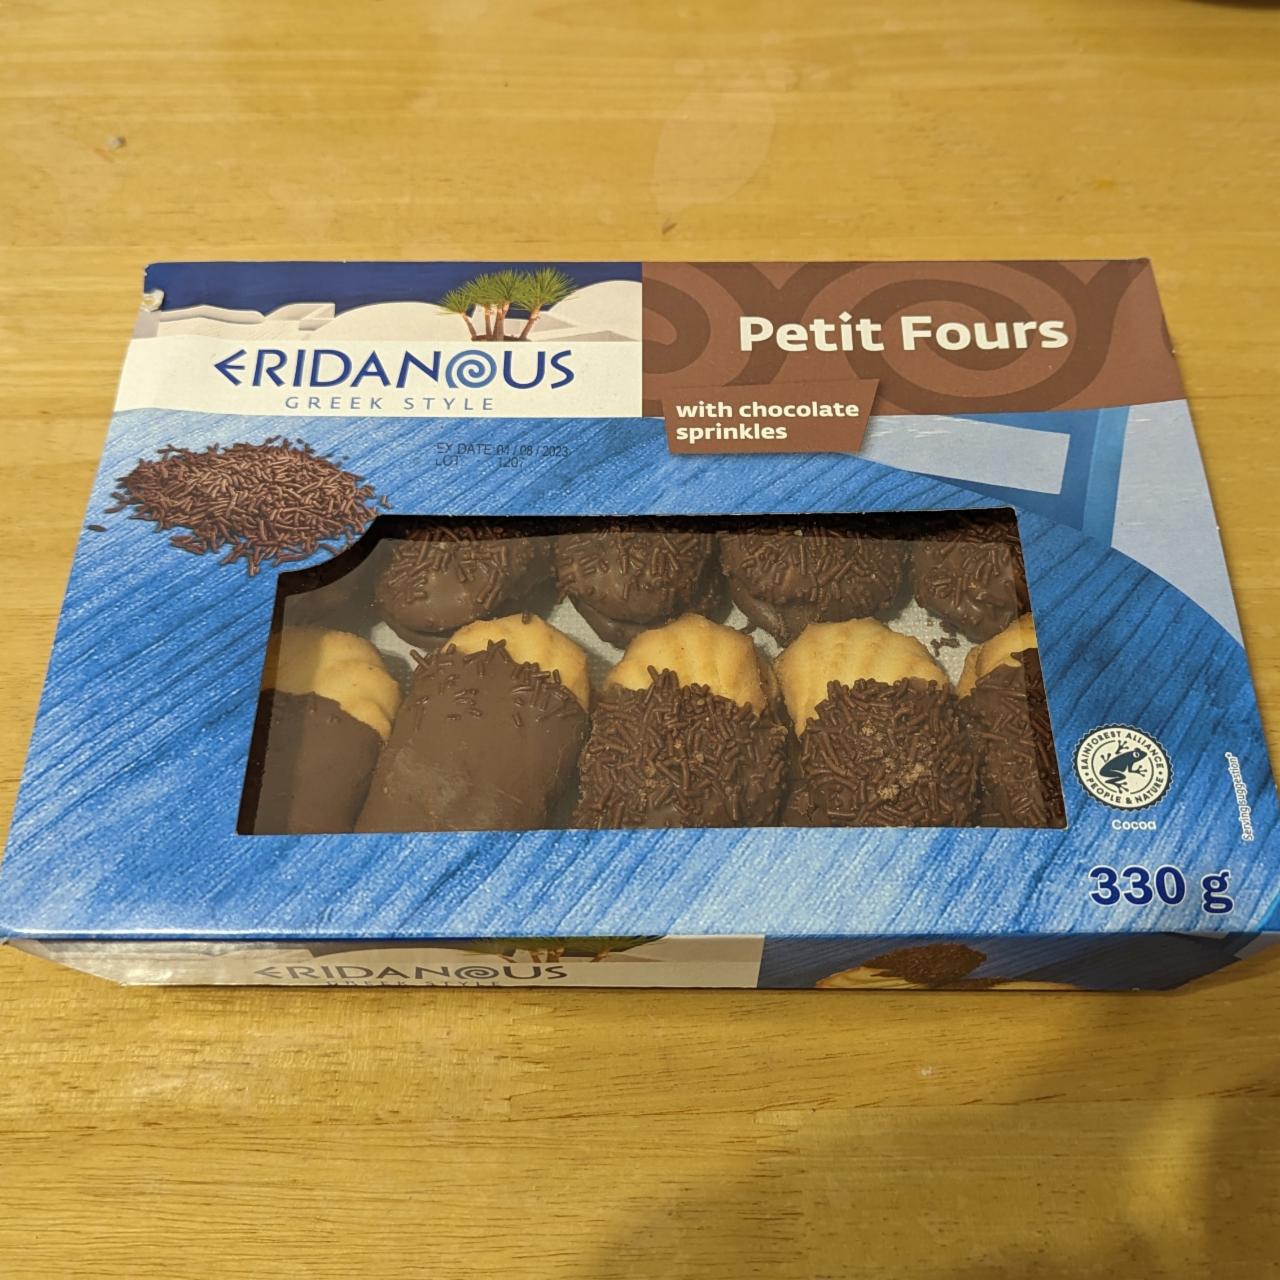 Фото - Печенье в шоколаде Petit Fours with chocolate sprinkles Eridanous